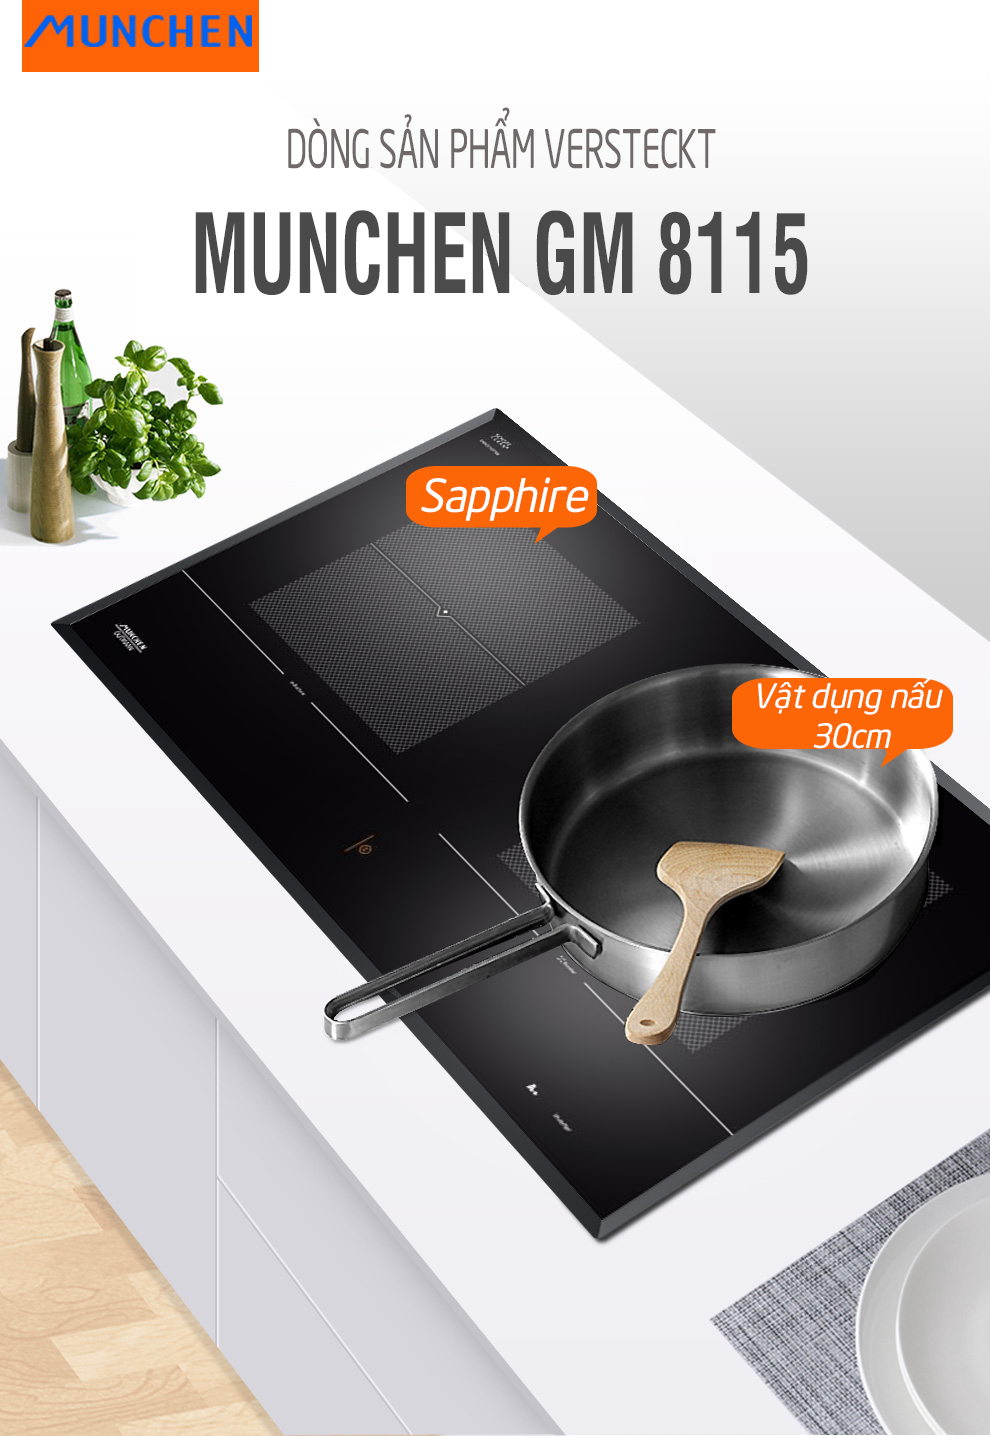 Bếp từ Munchen GM 8115 sử dụng vùng nấu Sapphire